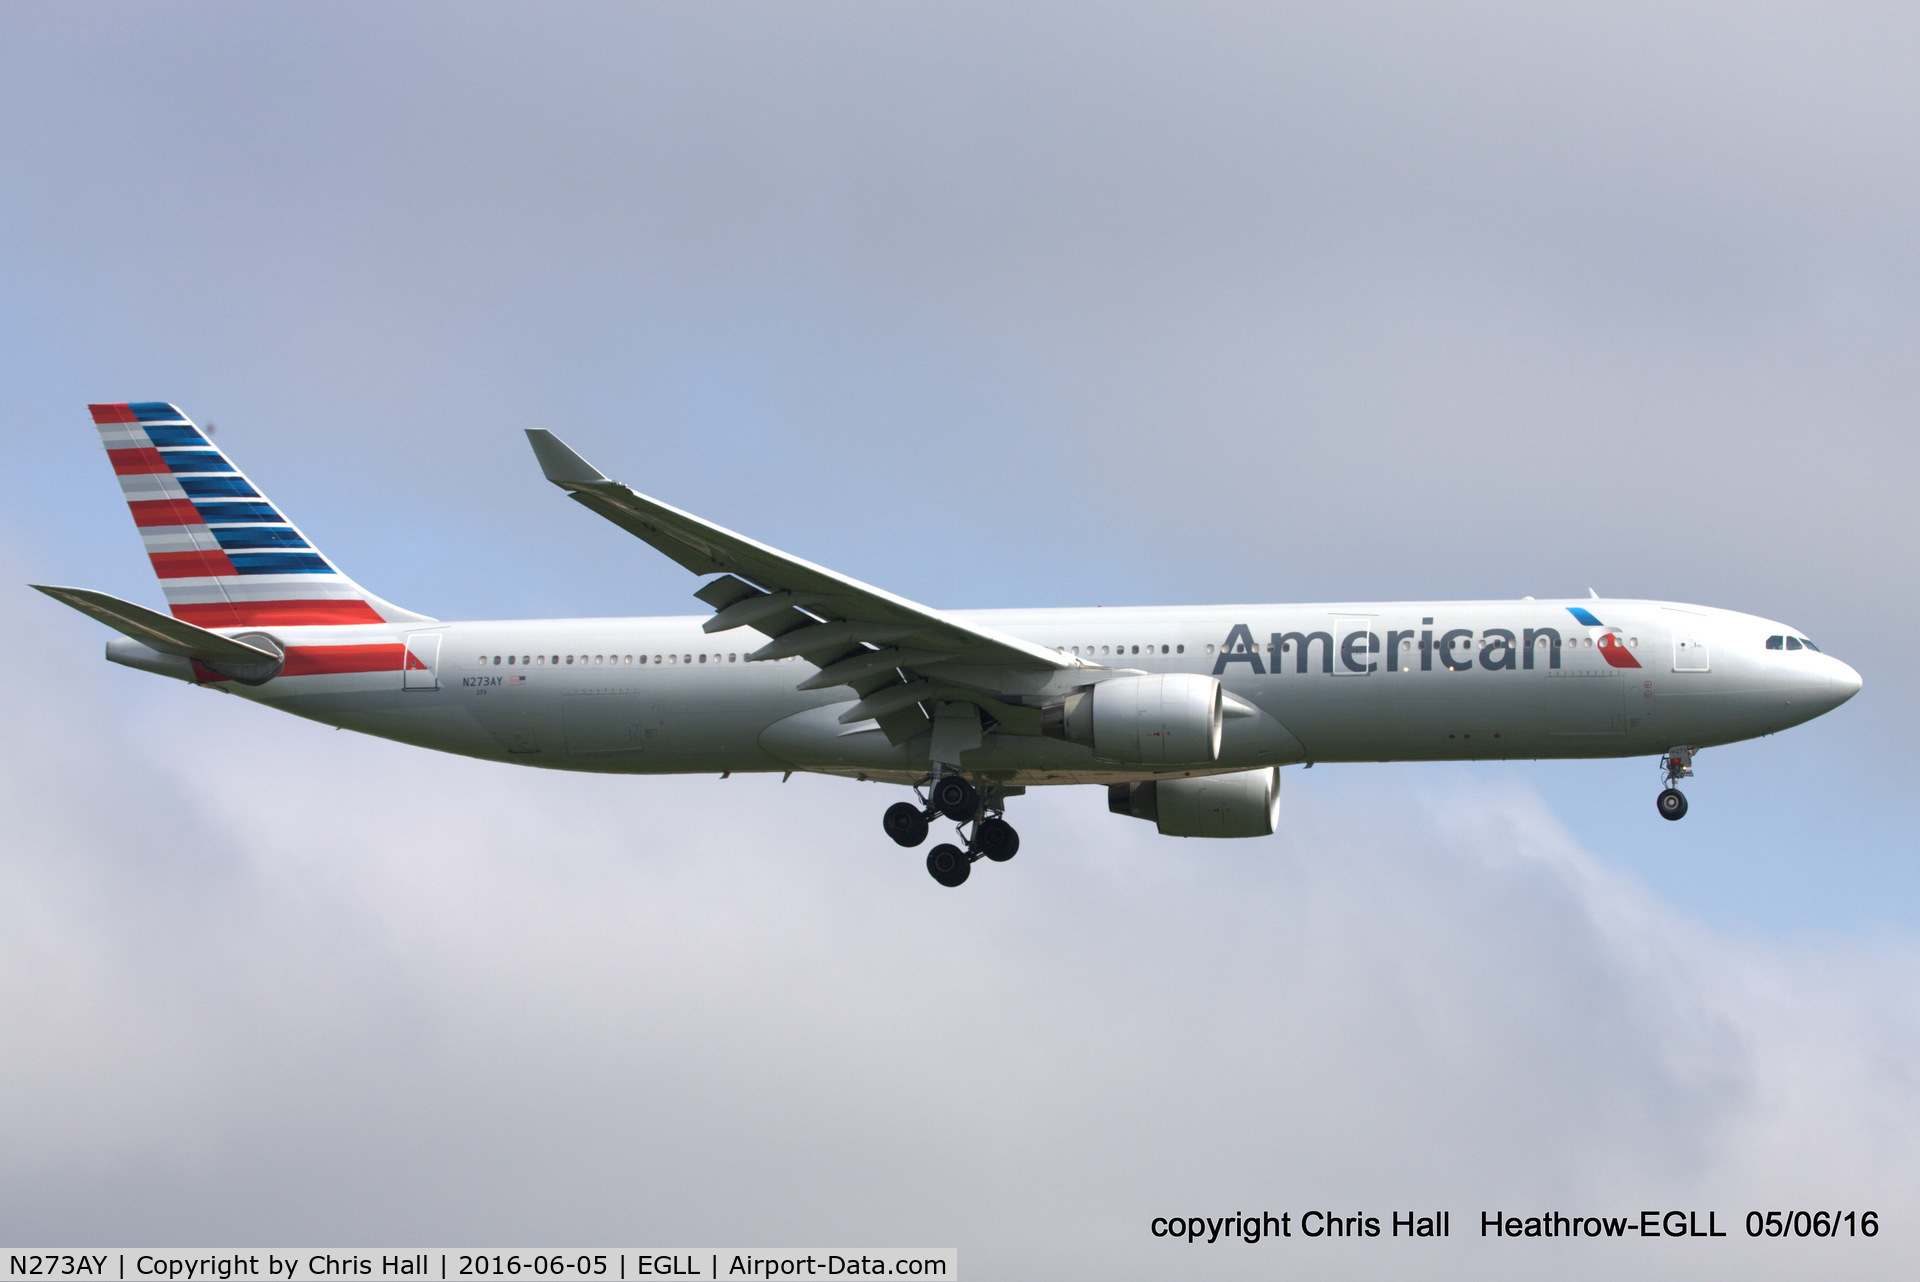 N273AY, 2000 Airbus A330-323 C/N 337, American Airlines